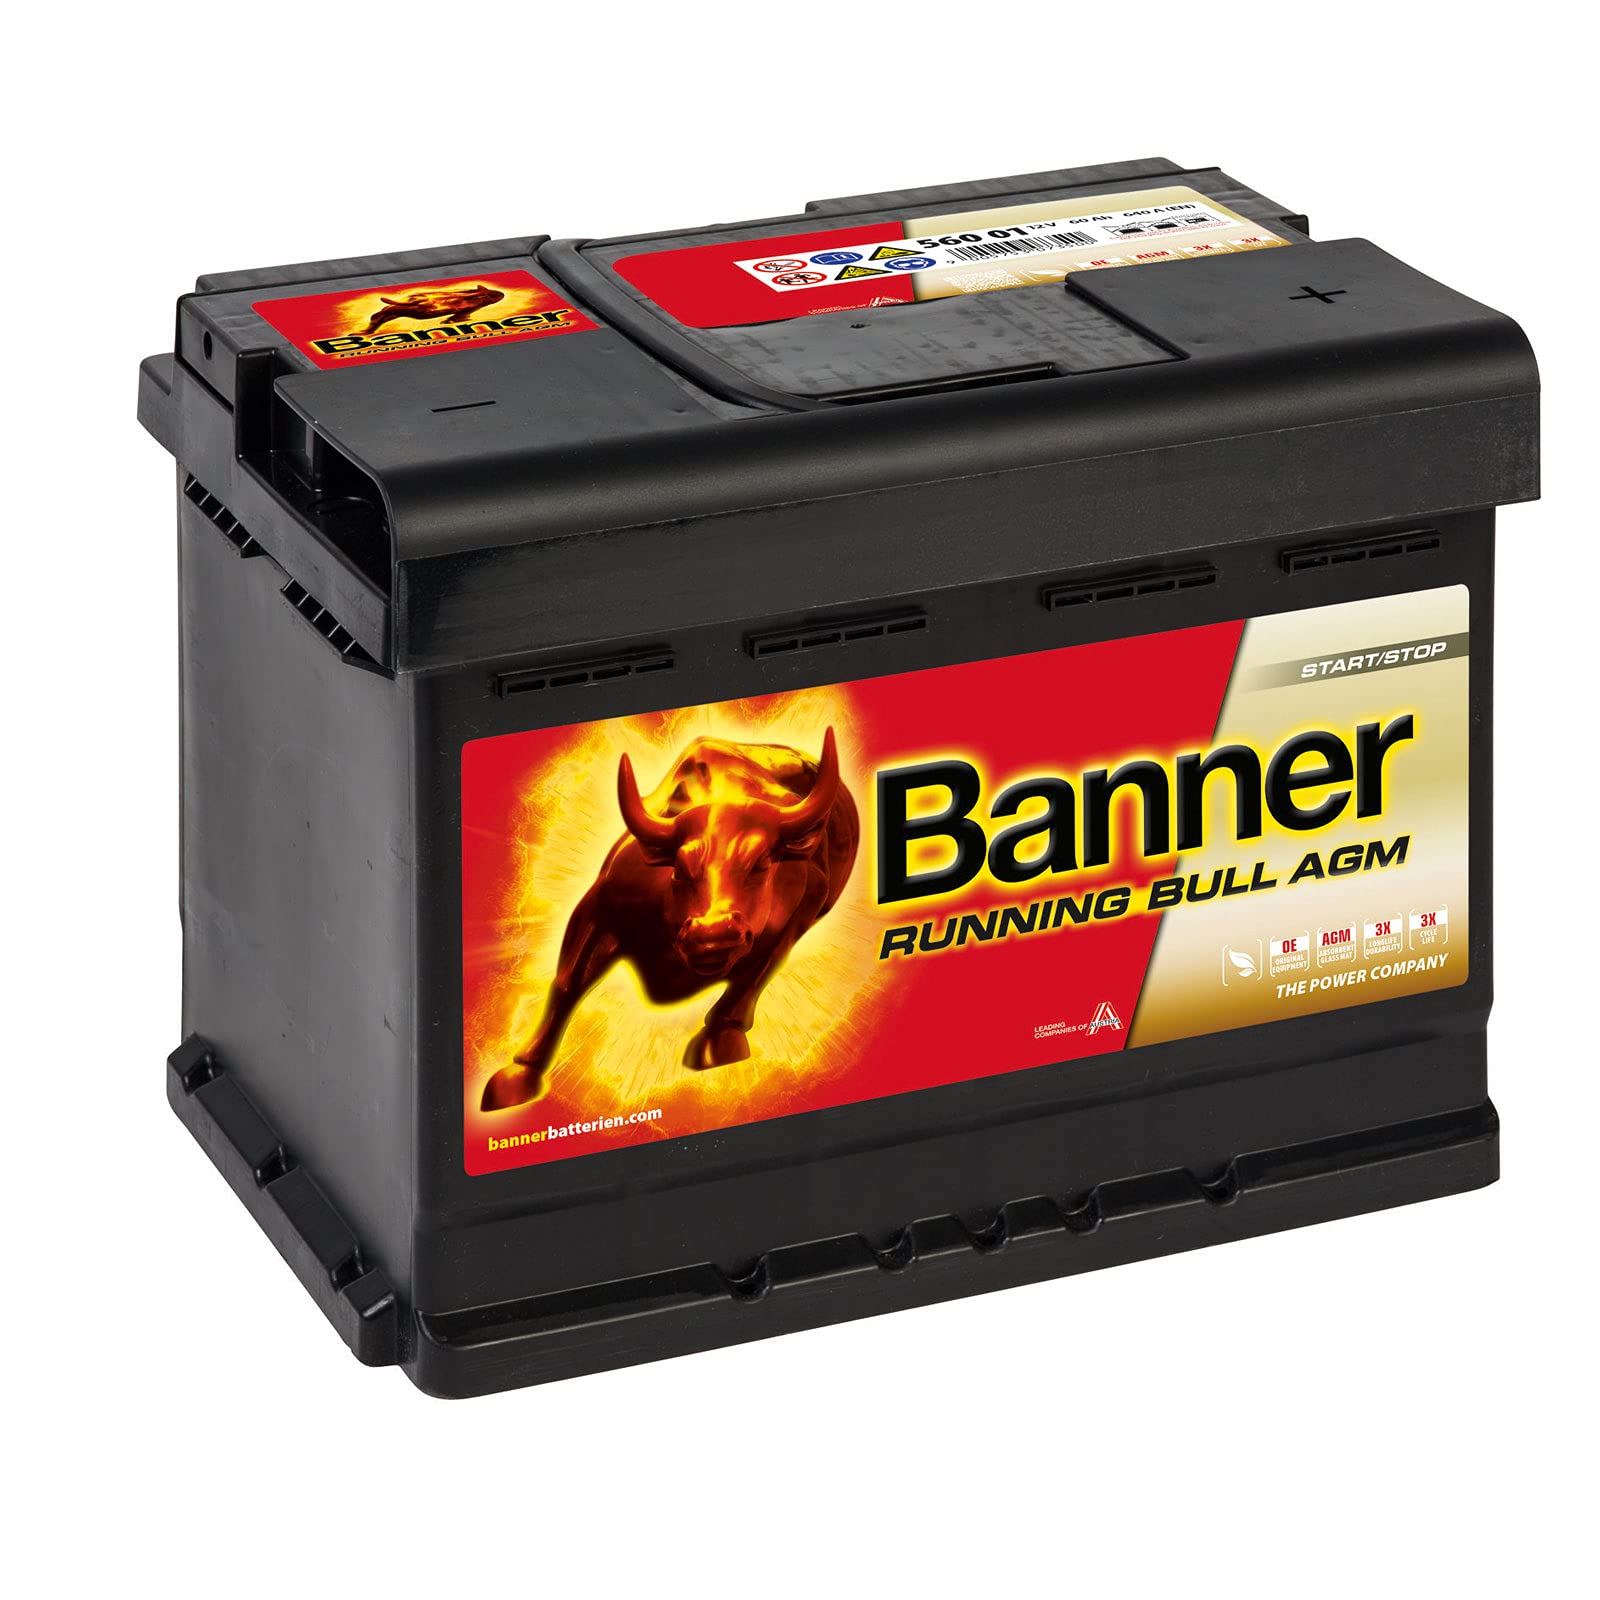 Banner – 322/302 – Batterie AGM Running Bull, 60 Ah von Banner